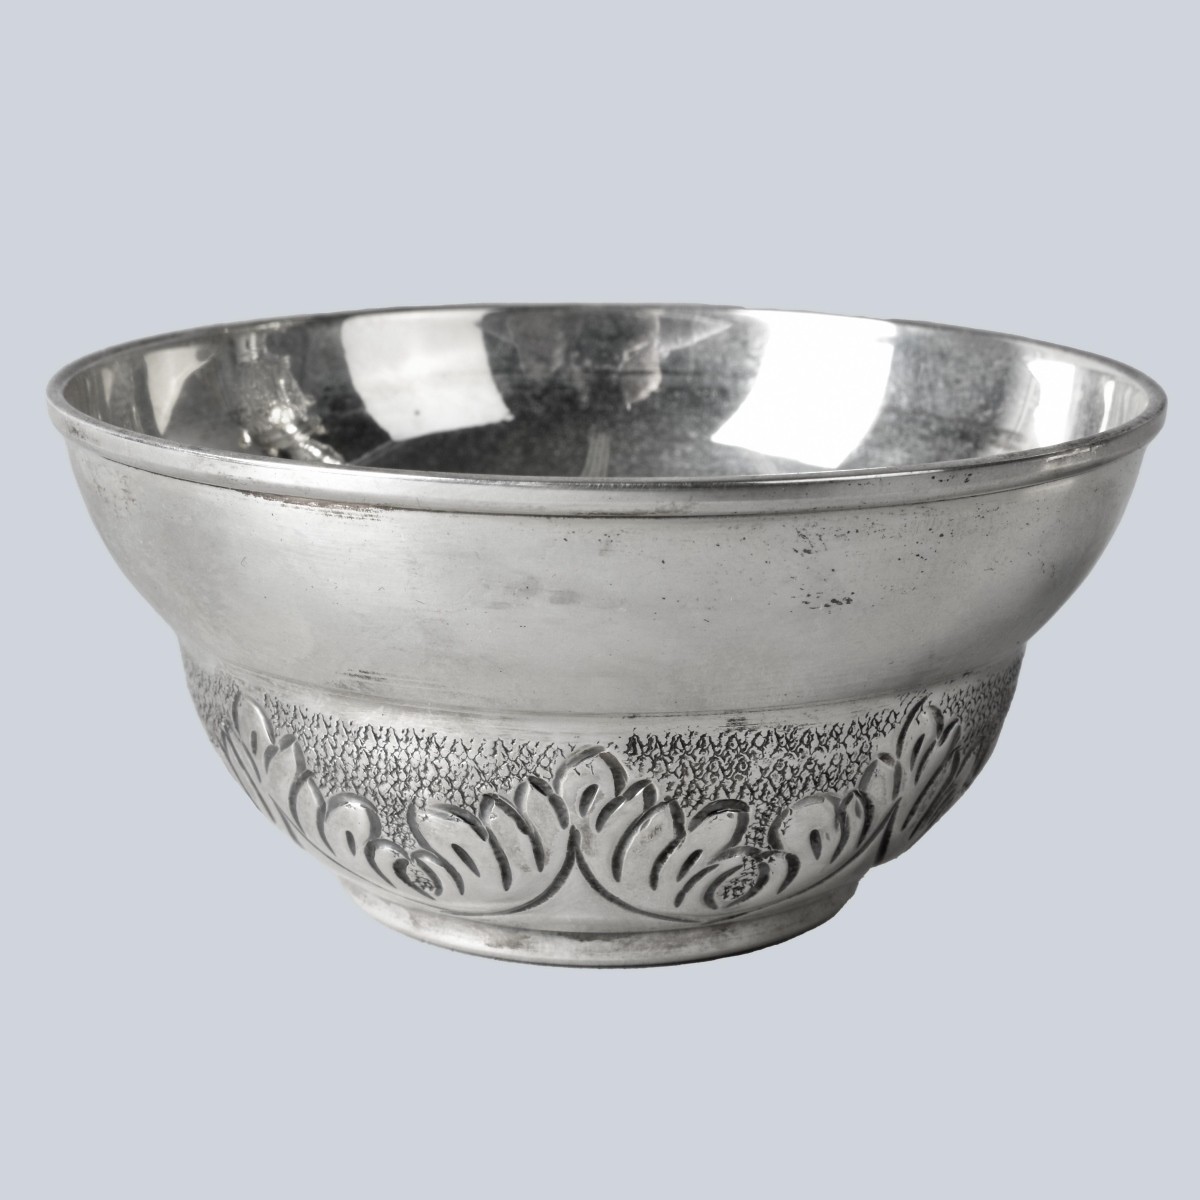 Vintage Turkish Sterling Silver Samovar Set